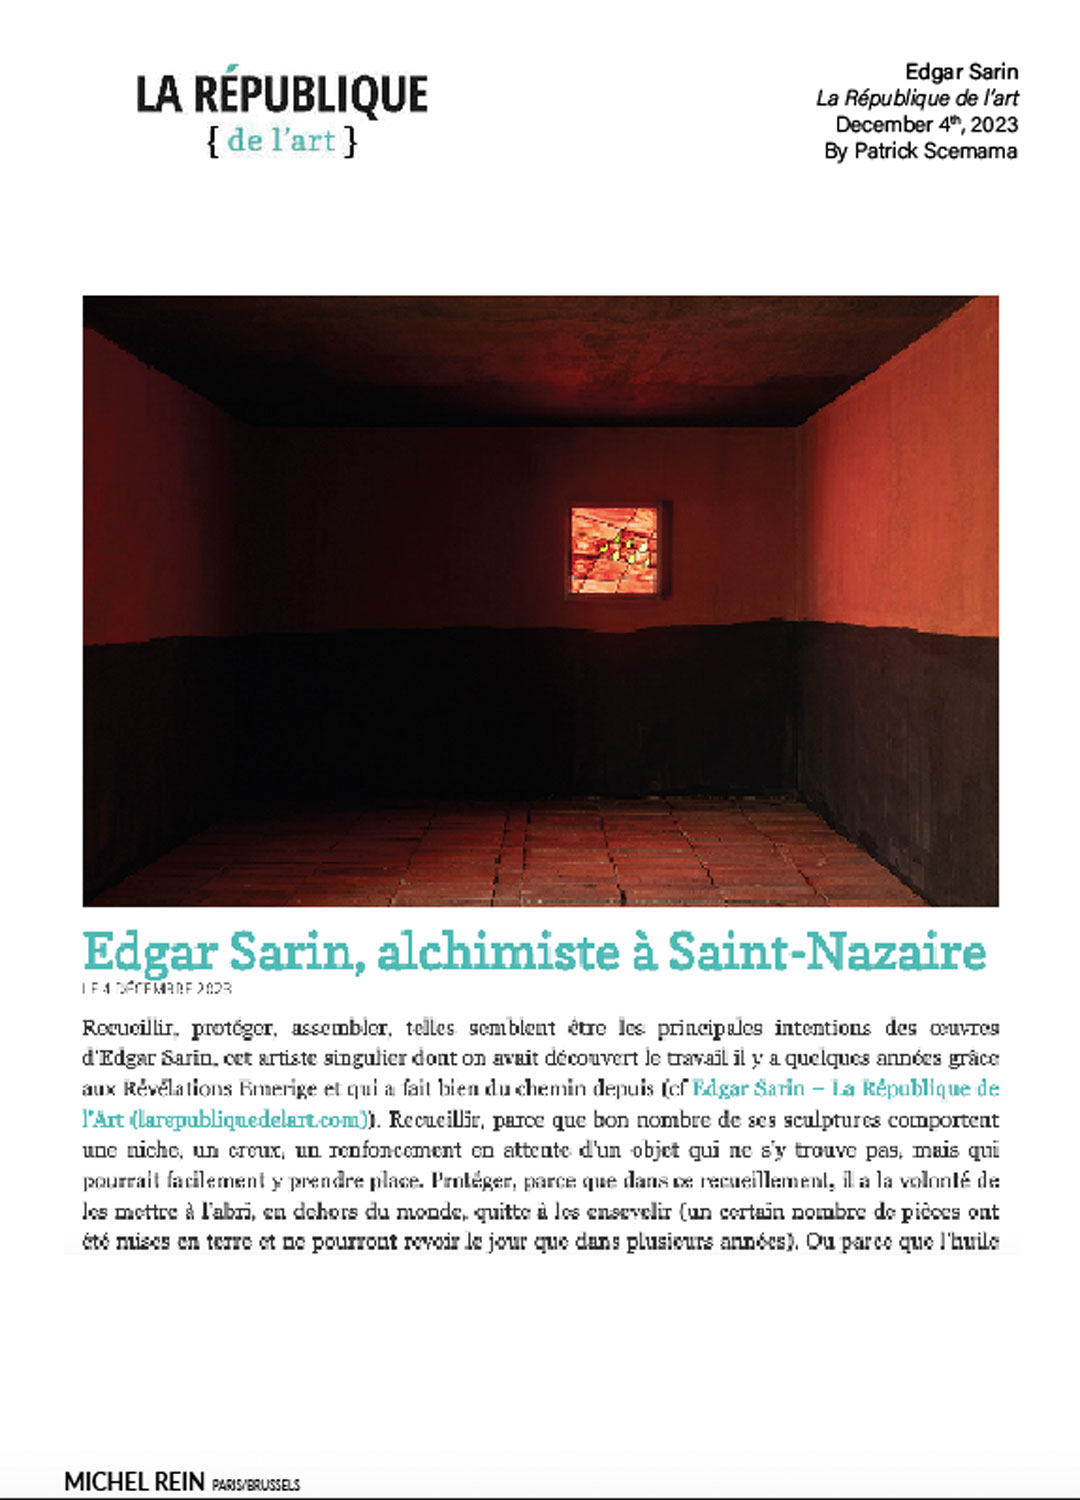 Edgar Sarin, alchimiste  Saint-Nazaire - La République de l'art